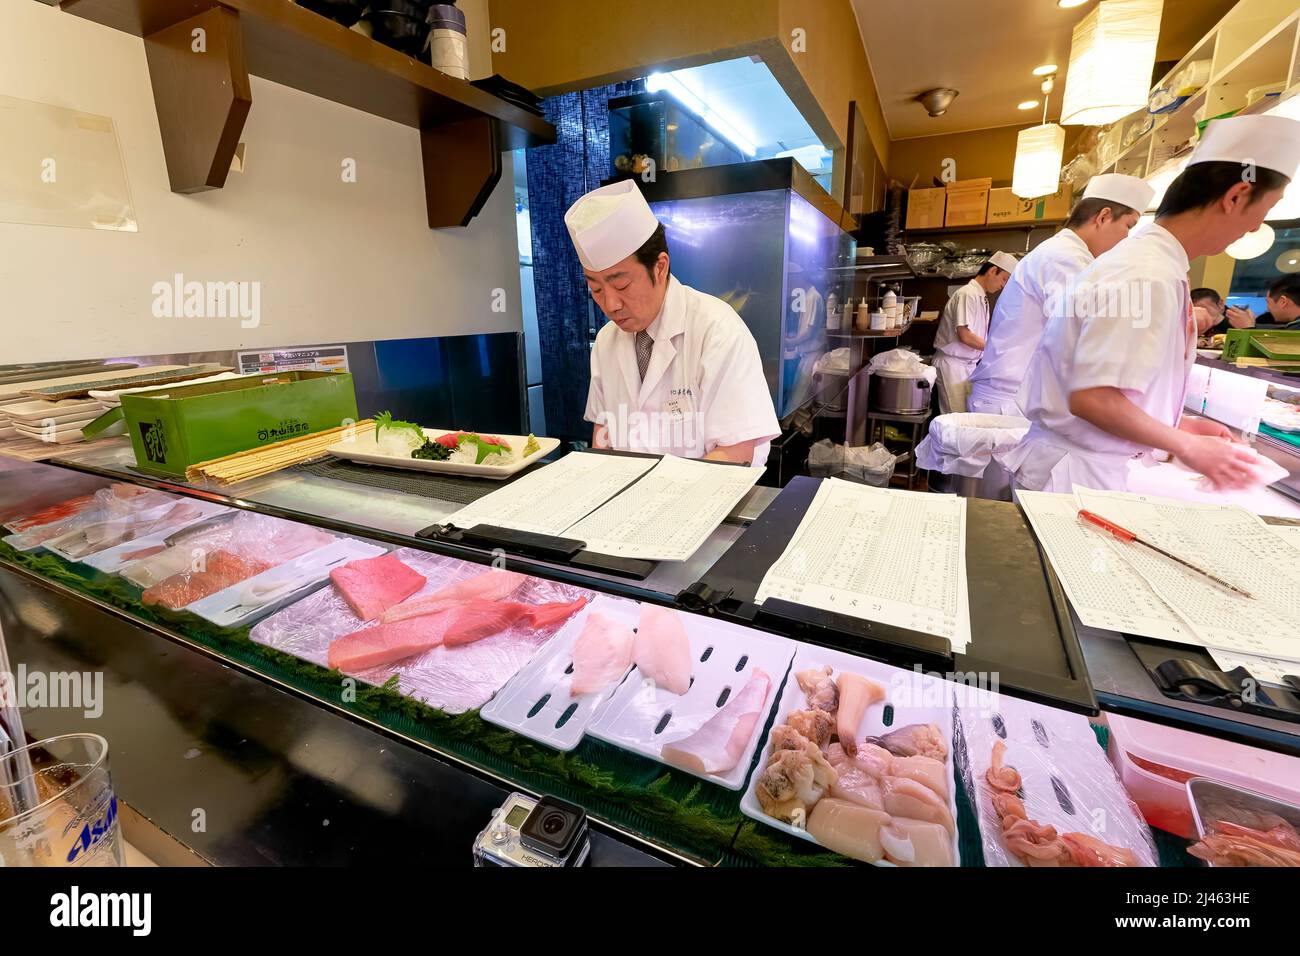 Japan. Tokyo. Sushi bar in Shibuya district Stock Photo